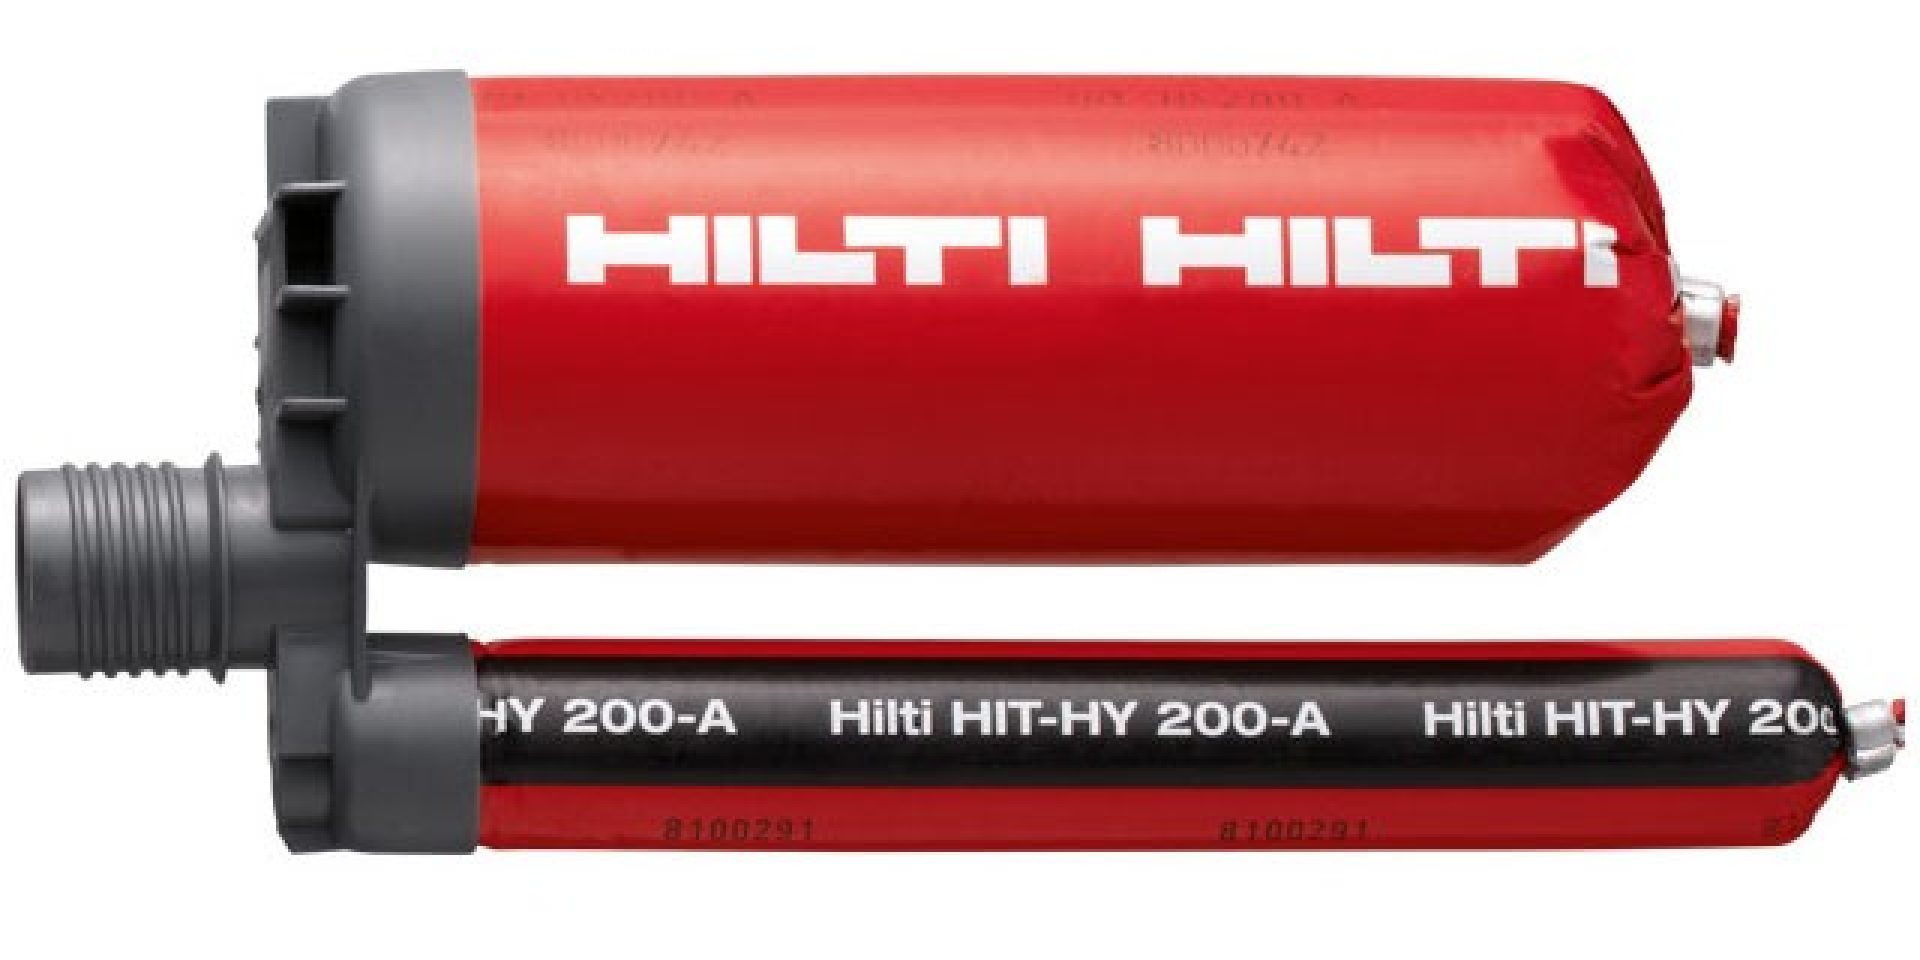 Résine hybride haute performance HIT-HY 200-A pour chevillage lourd et scellement de fers d'armature dans le cadre du système Hilti SafeSet